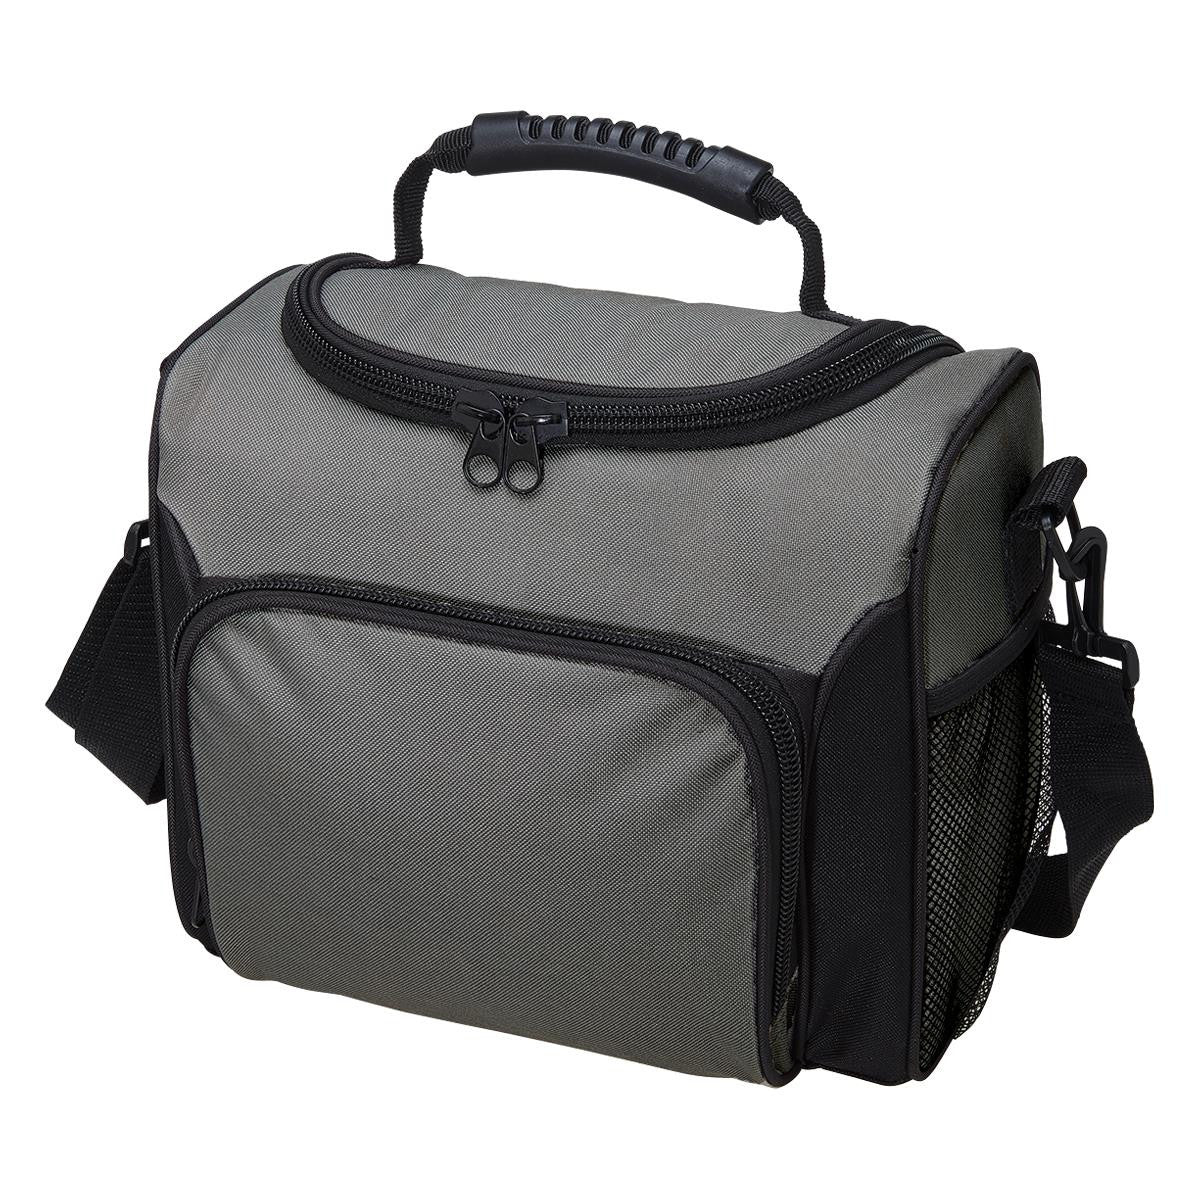 ONLINE SPECIAL ORDER Custom UltiMate Cooler Bag